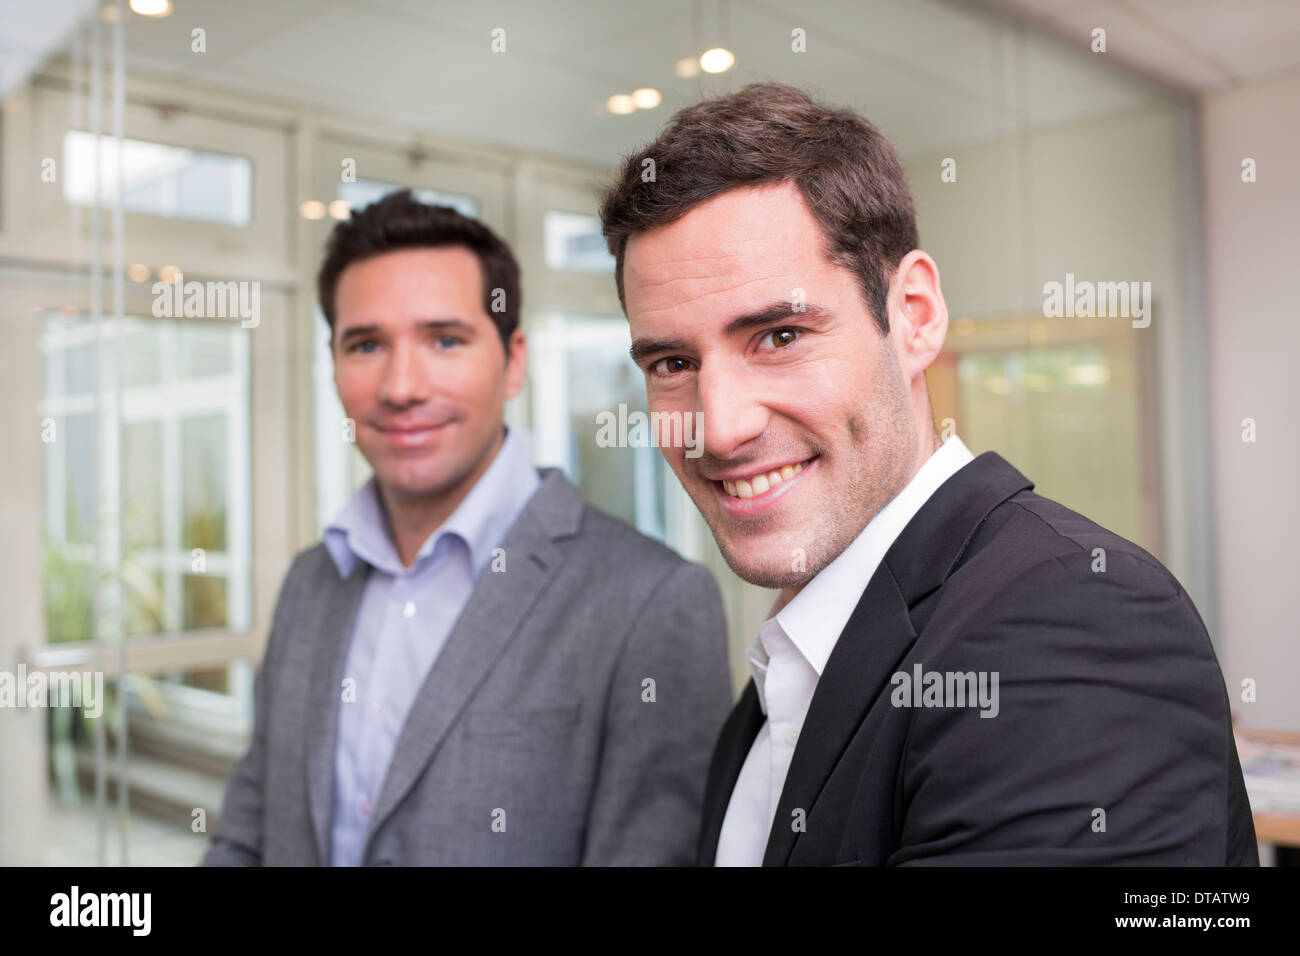 Porträt von zwei Lächeln Geschäftsleute im Büro, auf der Suche nach Kamera Stockfoto